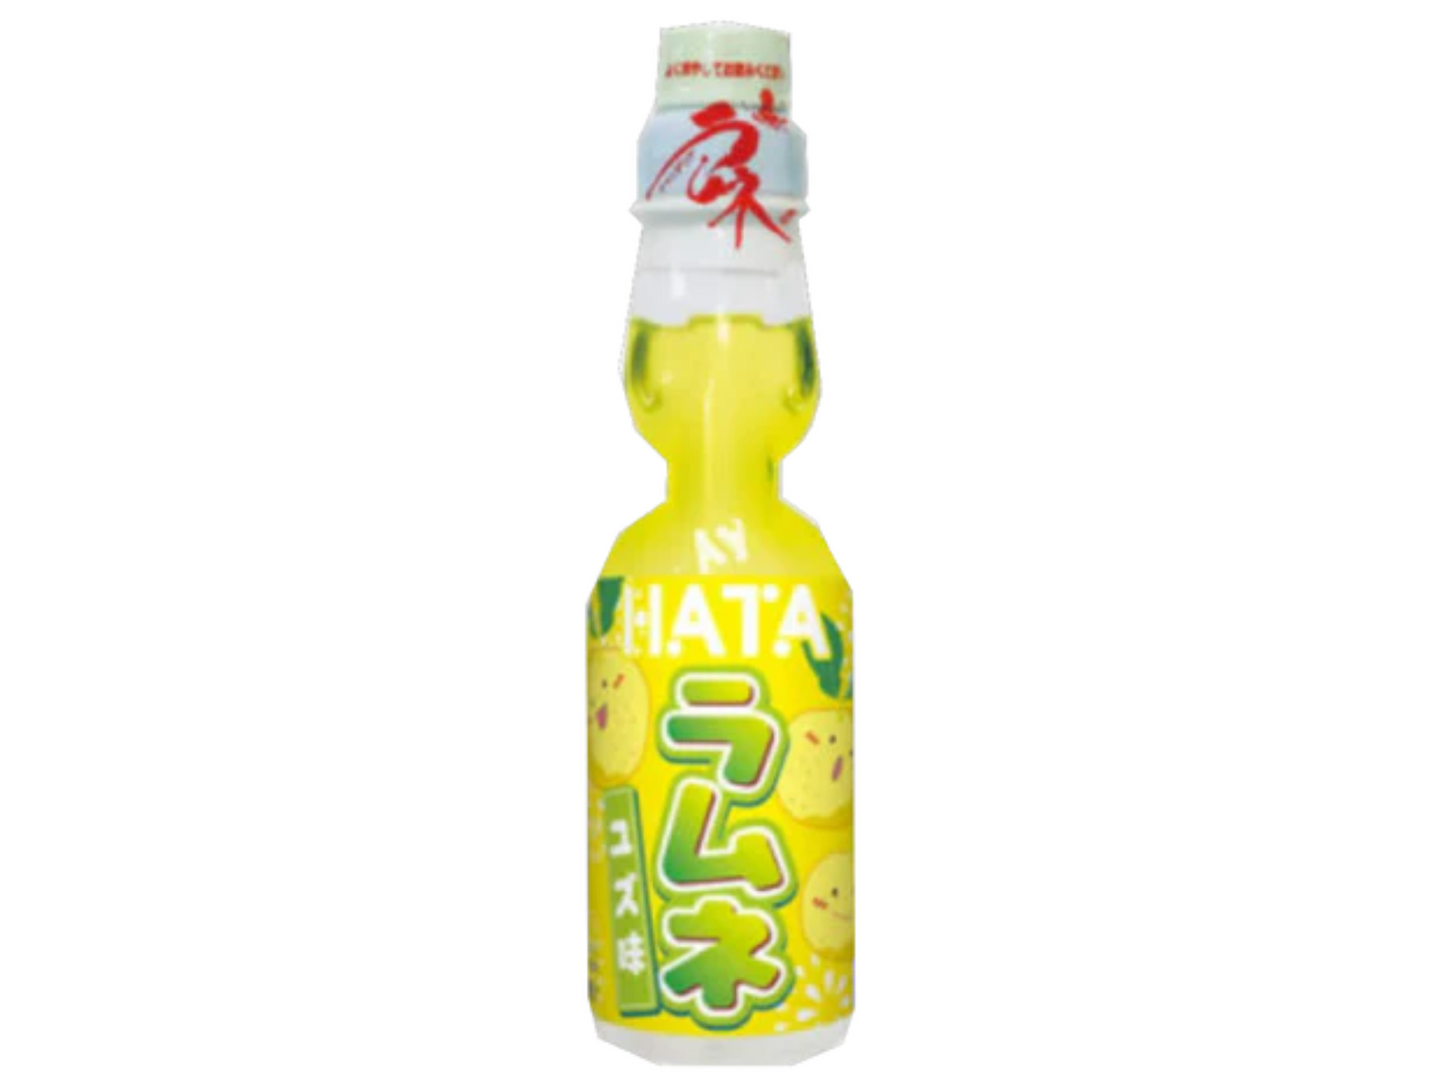 Hata - Lemon